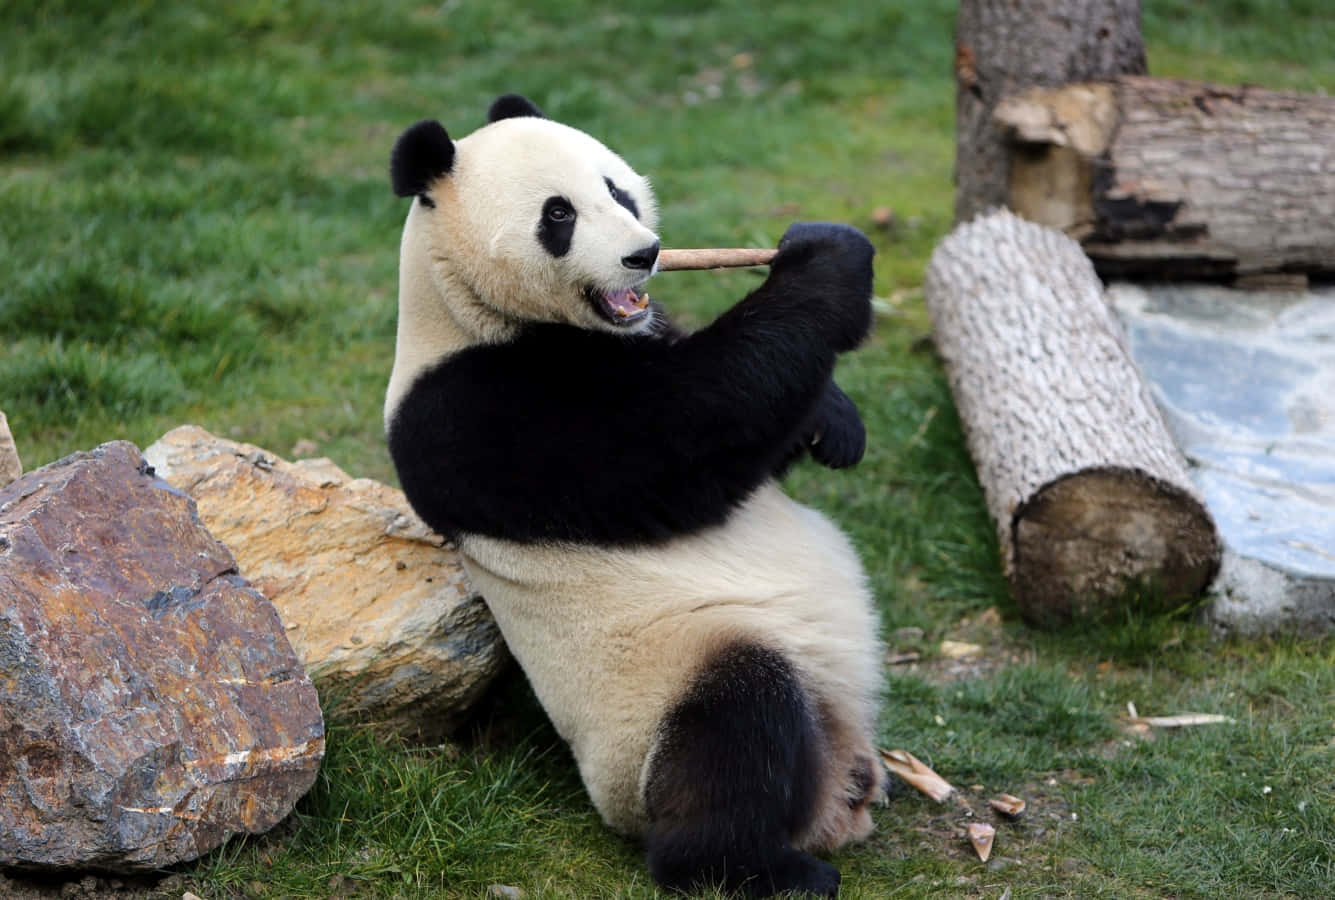 A close look at a beautiful panda